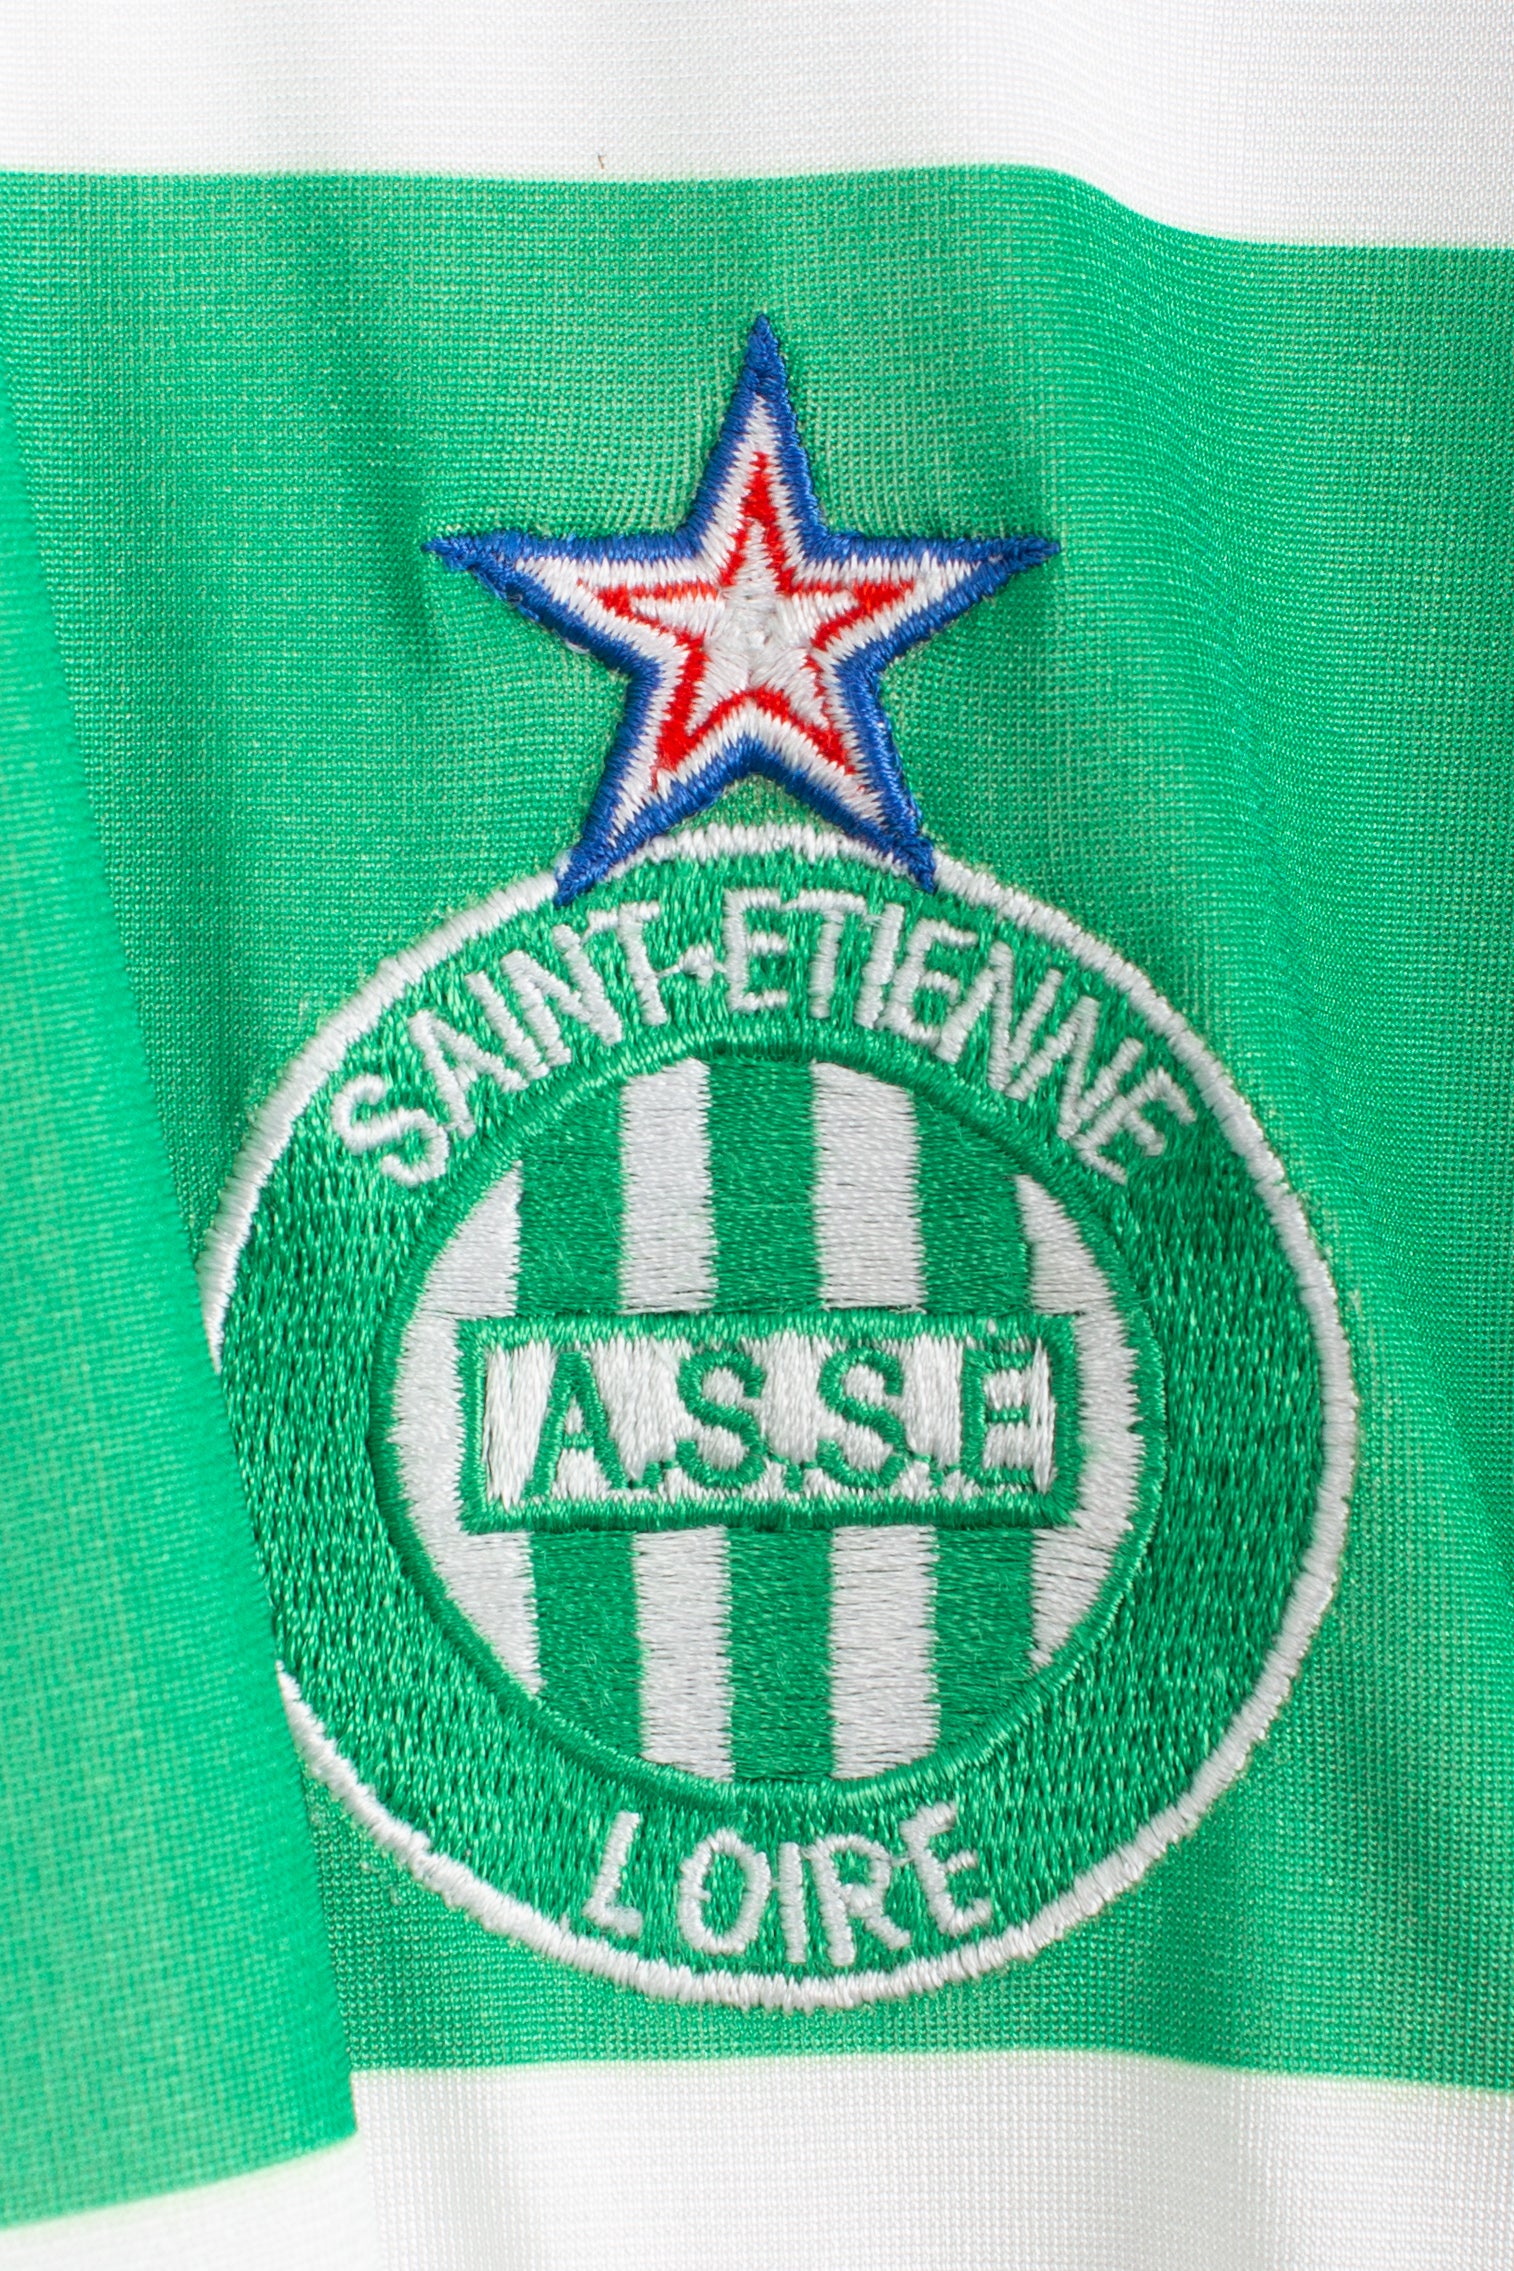 St. Etienne 2005/06 Away Shirt (L)